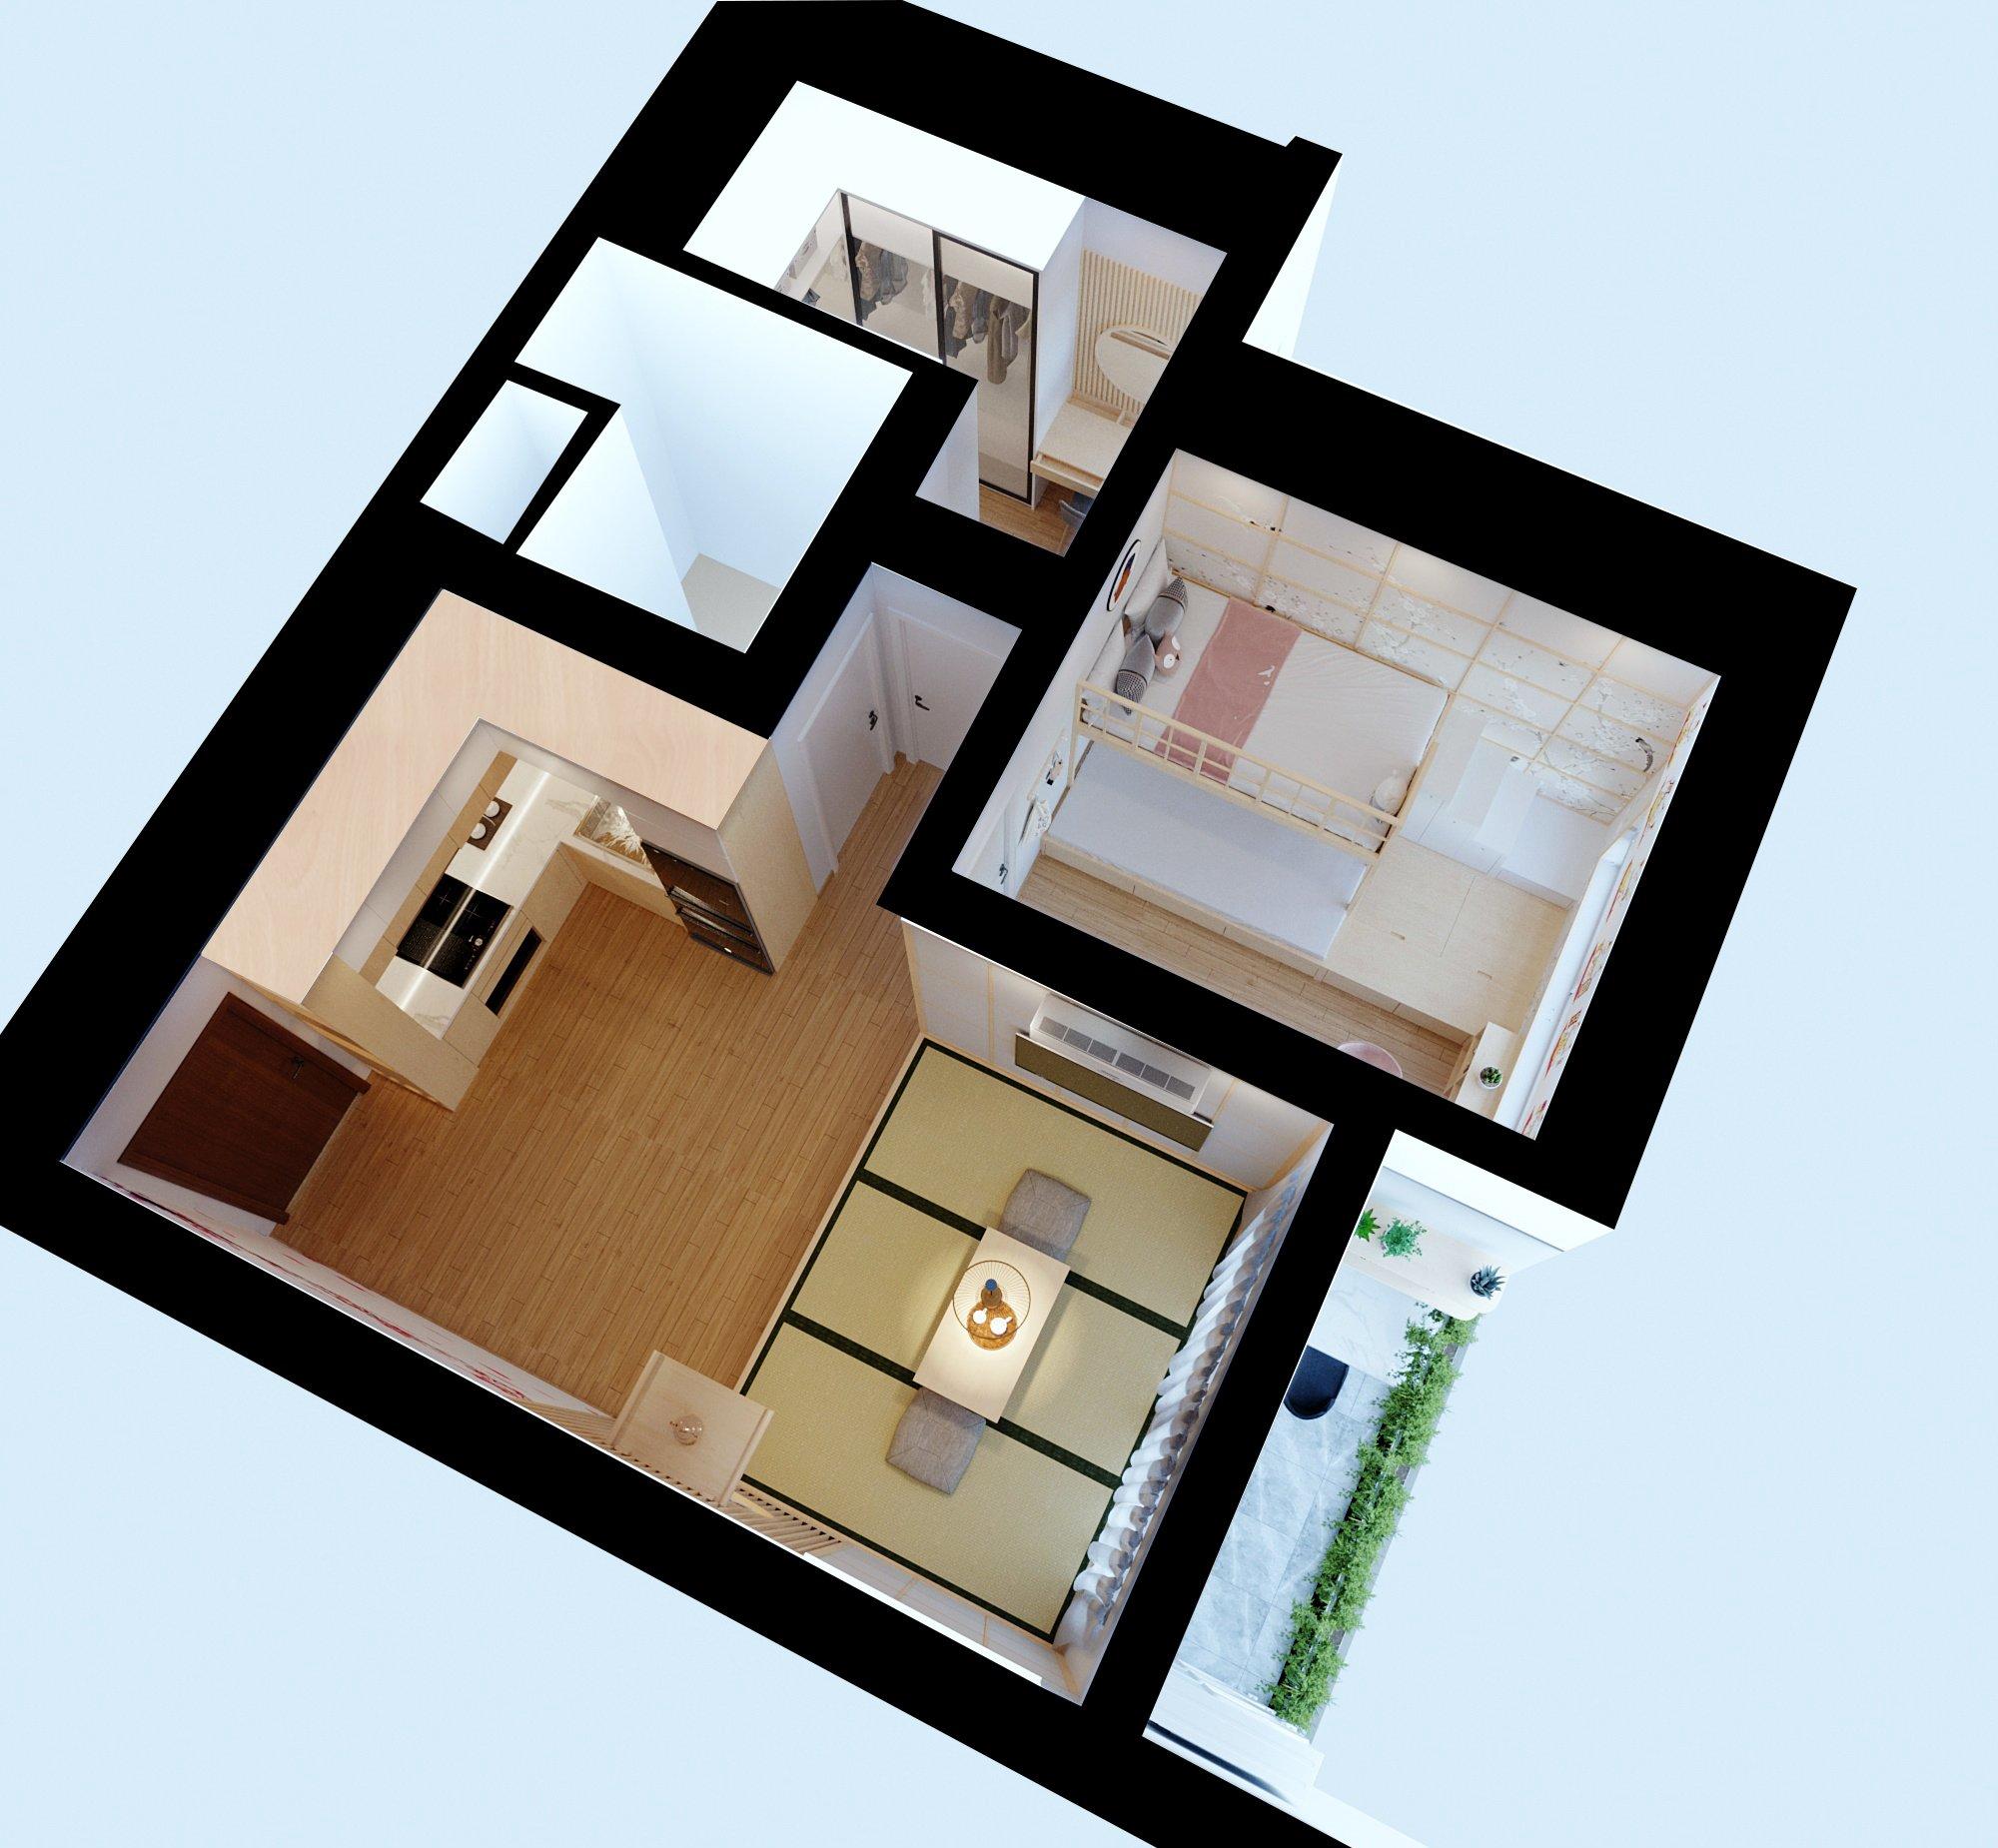 Bản vẽ 3D toàn cảnh của thiết kế nội thất chung cư